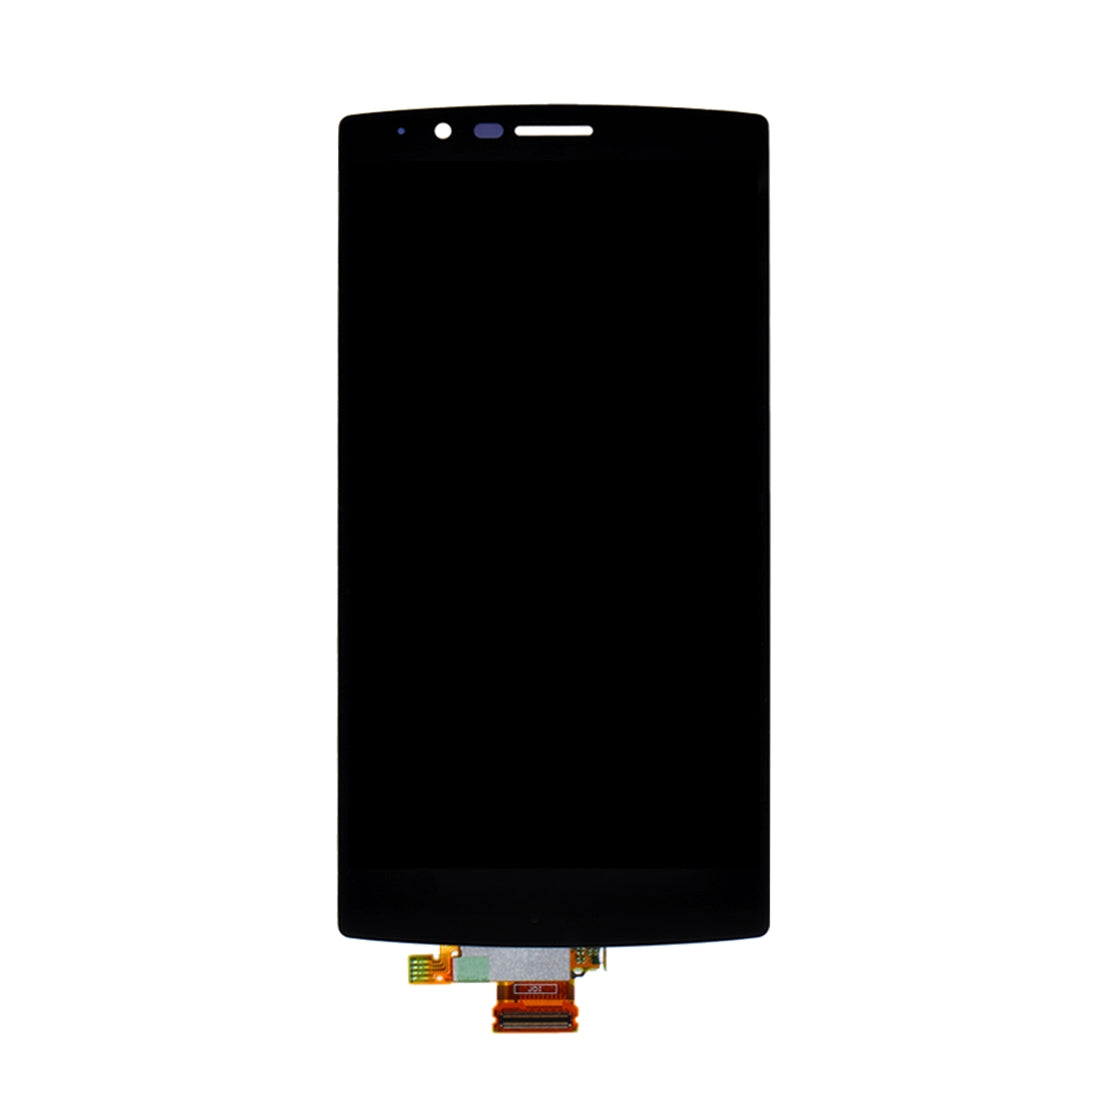 Ecran LCD + Tactile LG G4 H810 VS999 F500 F500S F500K F500L H81 Noir